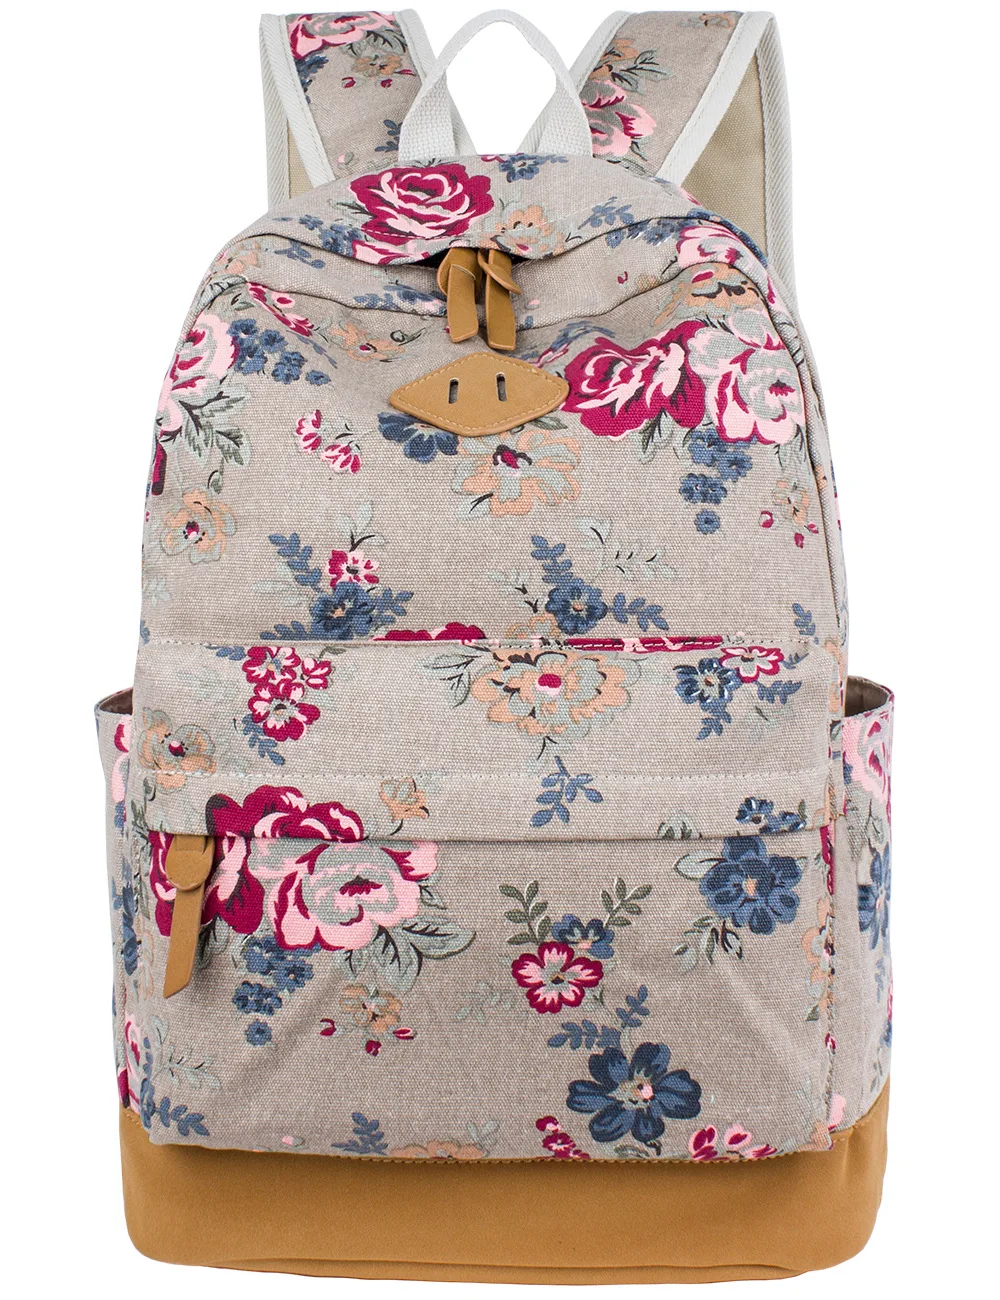 Coofit Новый Для женщин рюкзак Повседневное с цветочным принтом ранцы подросток Обувь для девочек Школьный рюкзак с цветочным принтом